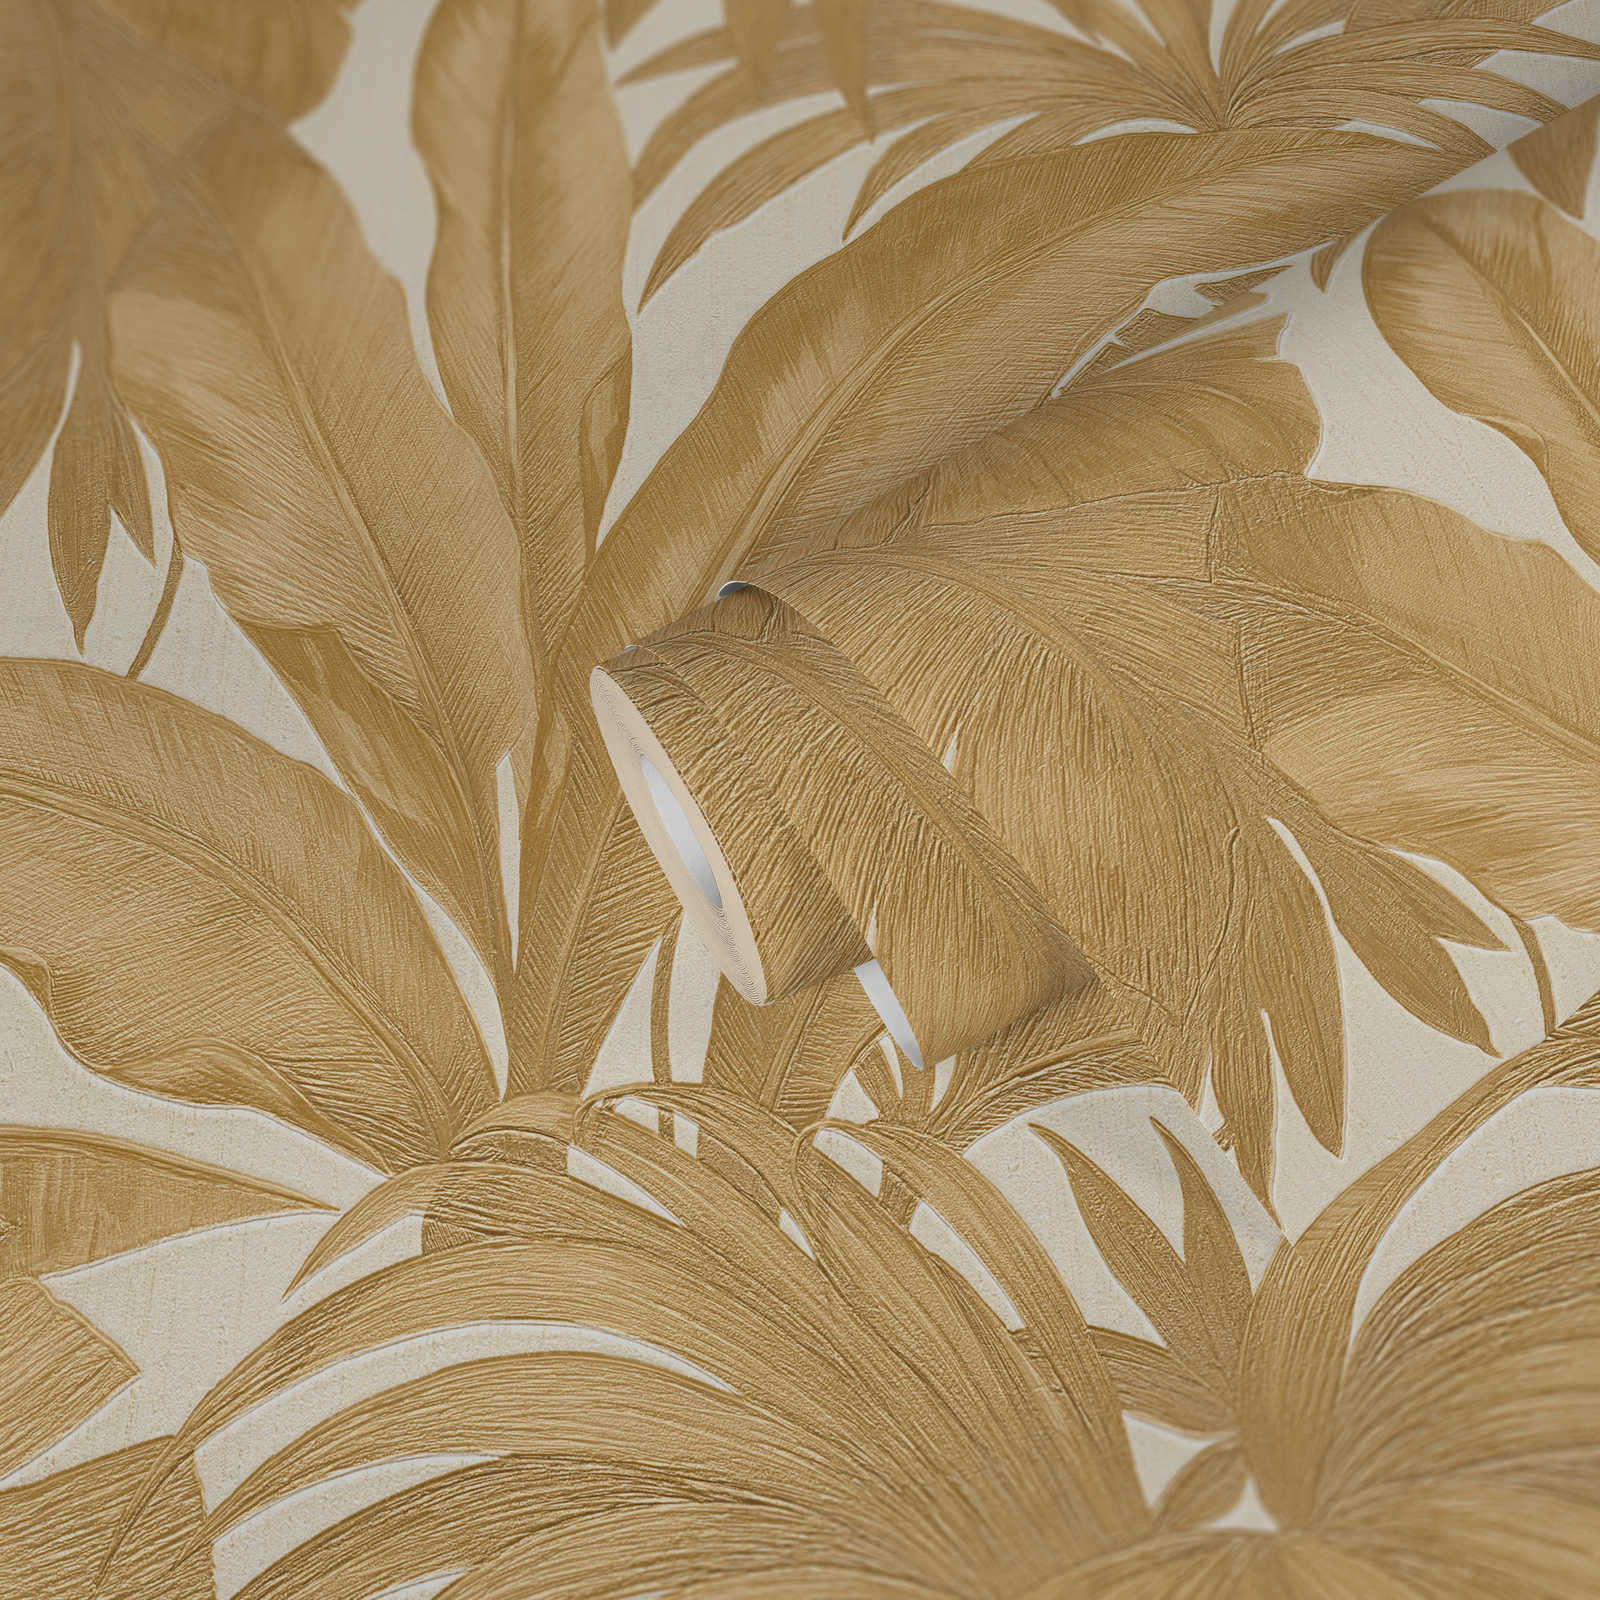             VERSACE Papier peint palmiers & effet doré - crème, métallique
        